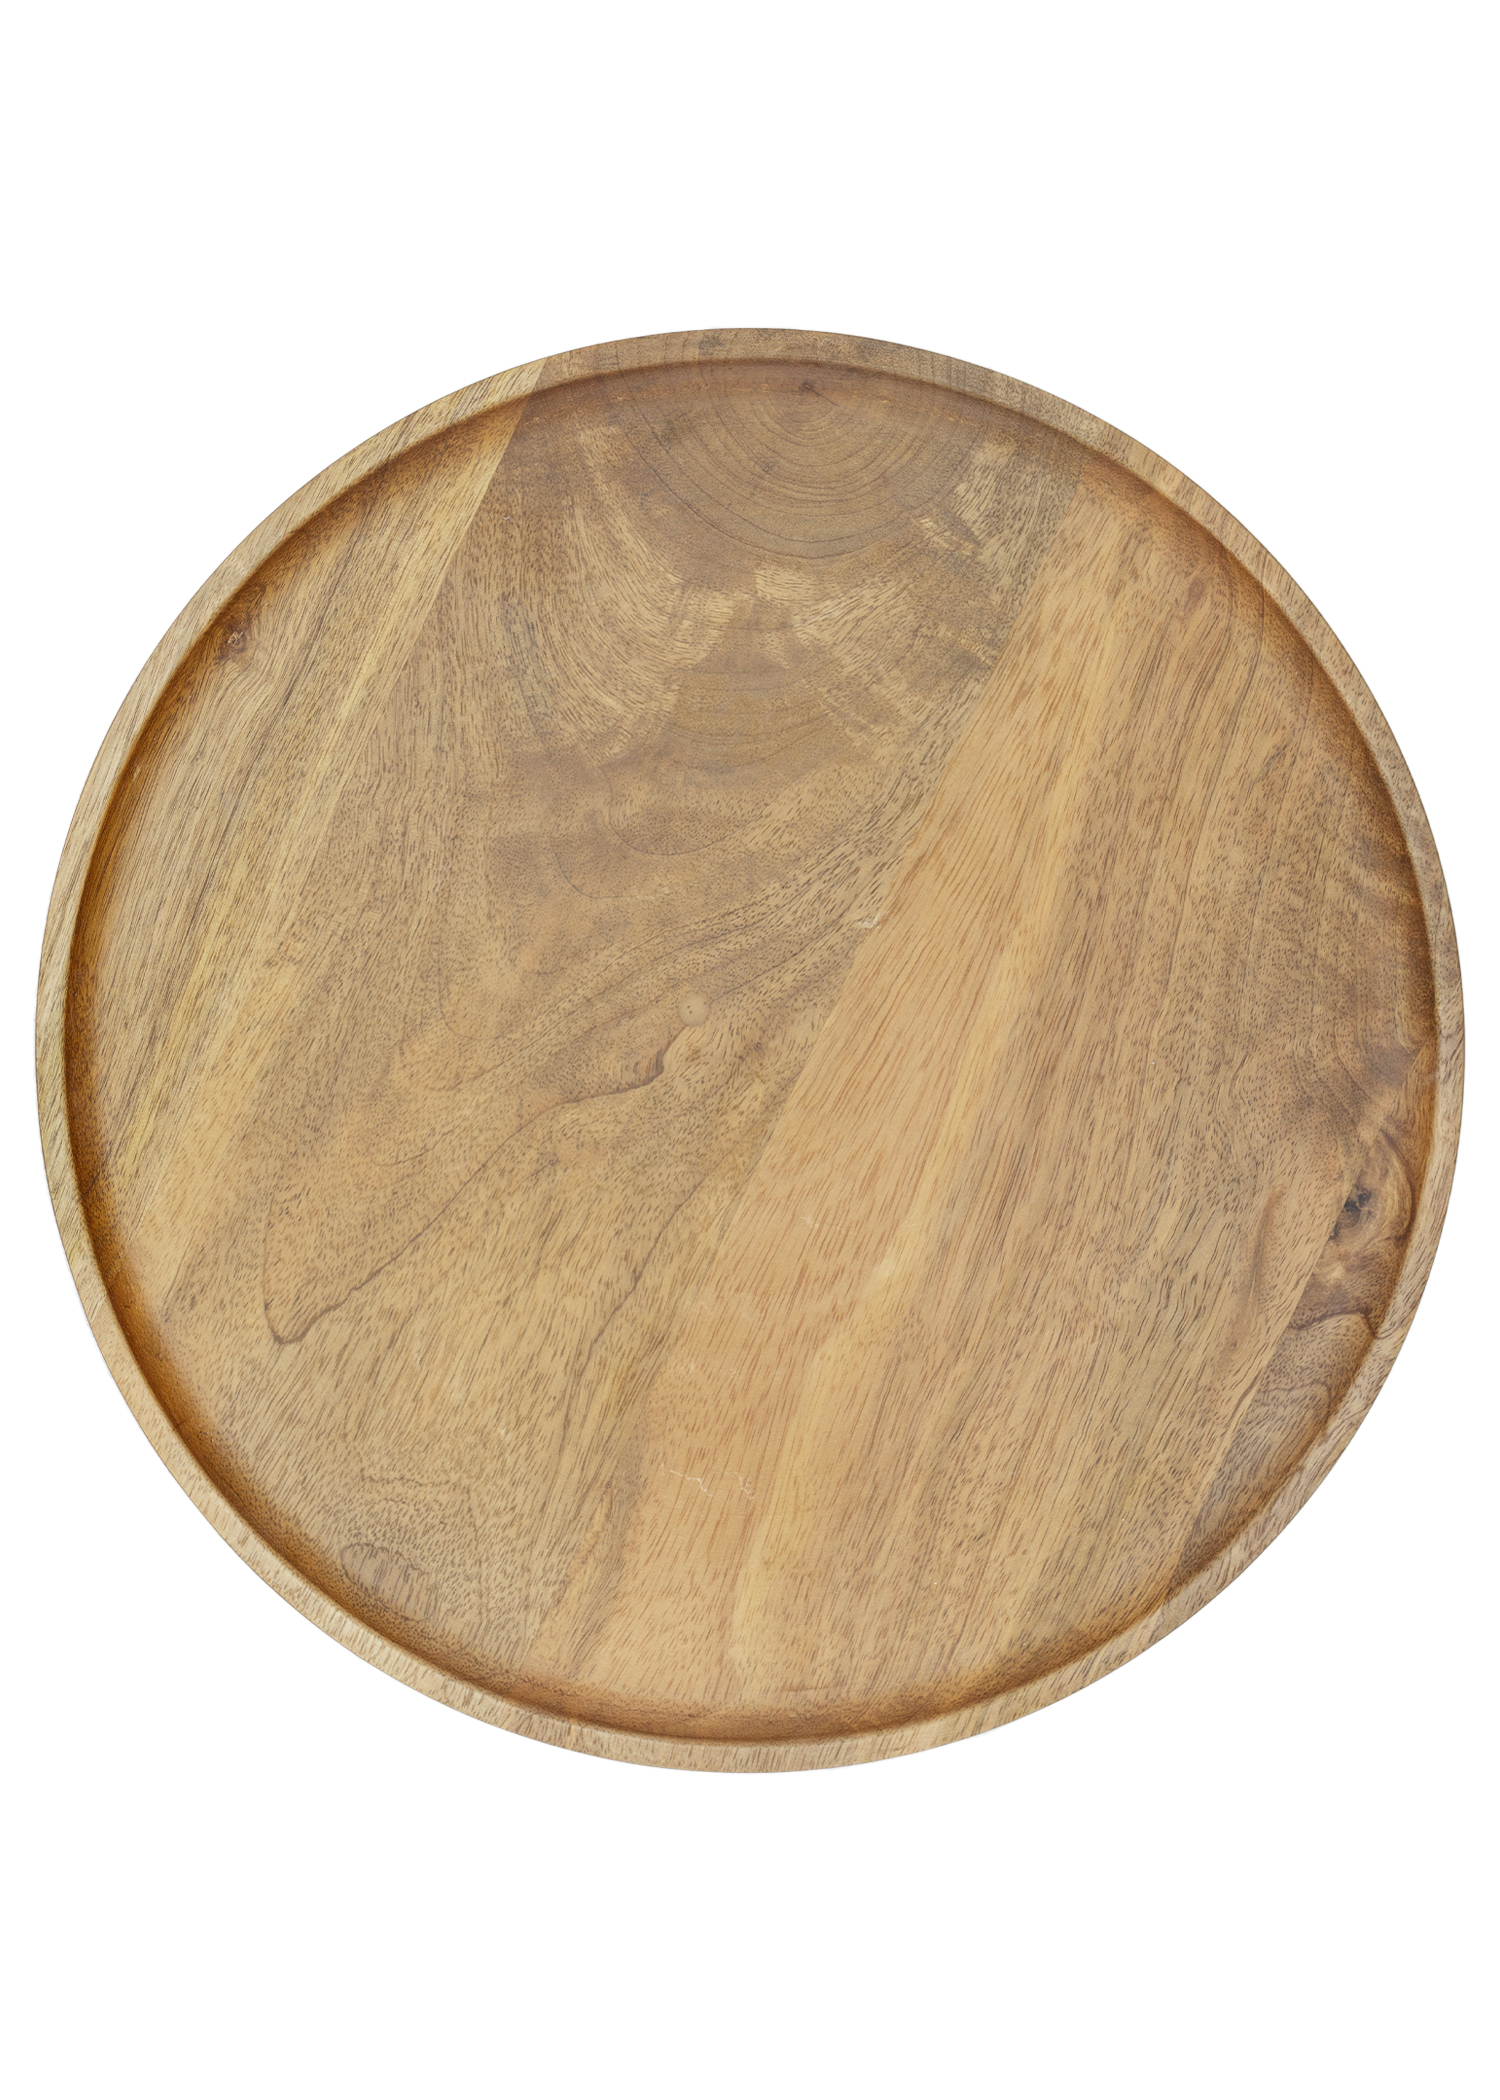 Mango wood tray Image 0